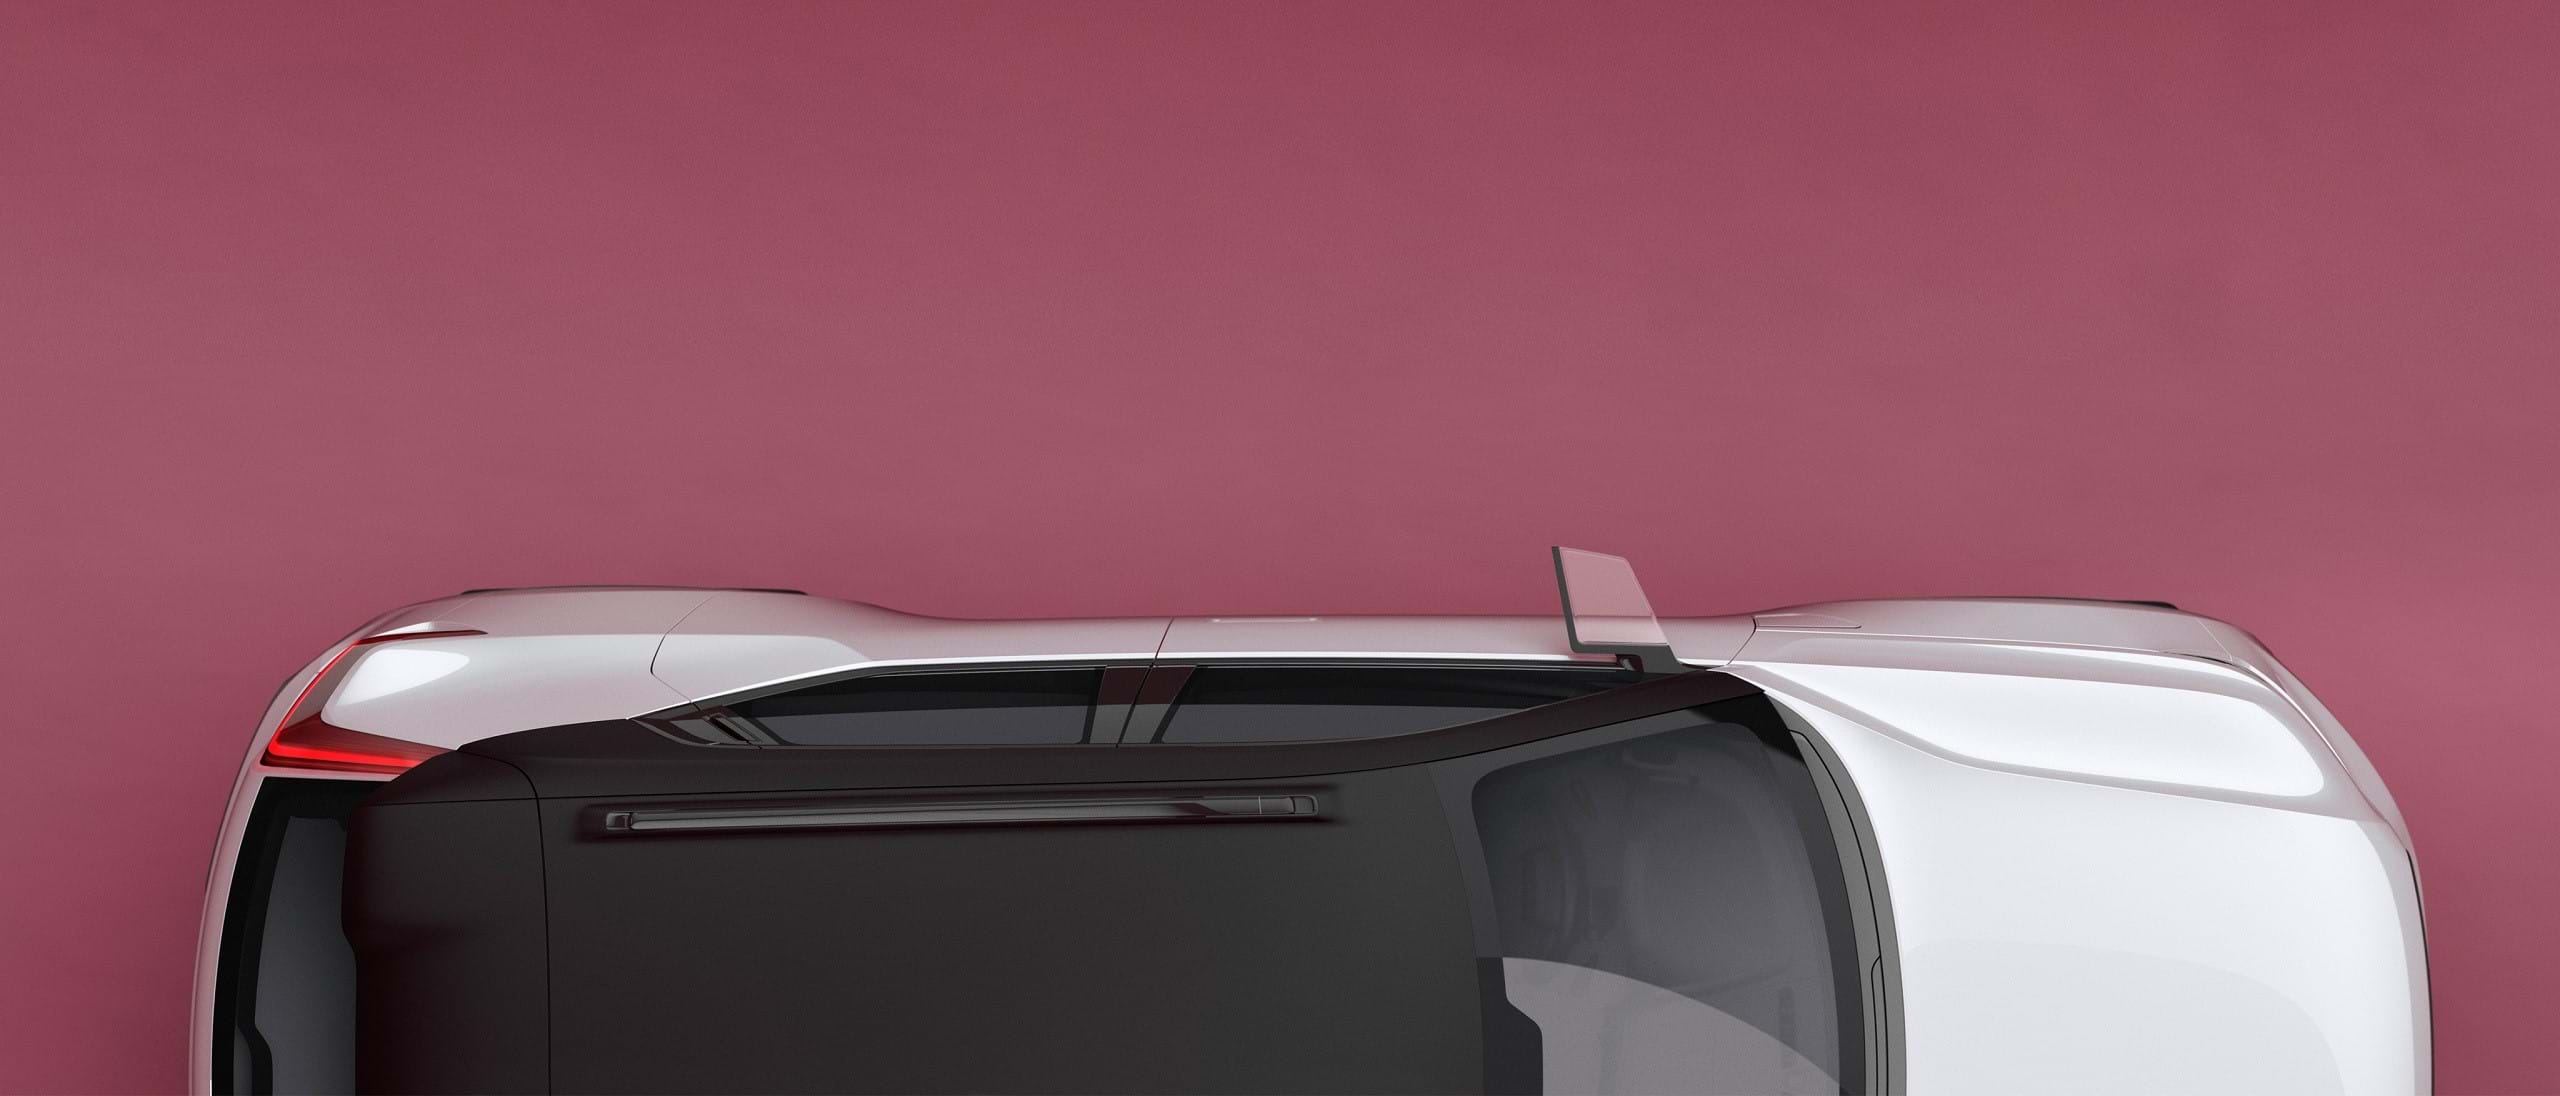 วอลโว่ Concept 40 สีขาวพร้อมหลังคาสีดำตัดกัน มองจากด้านบน